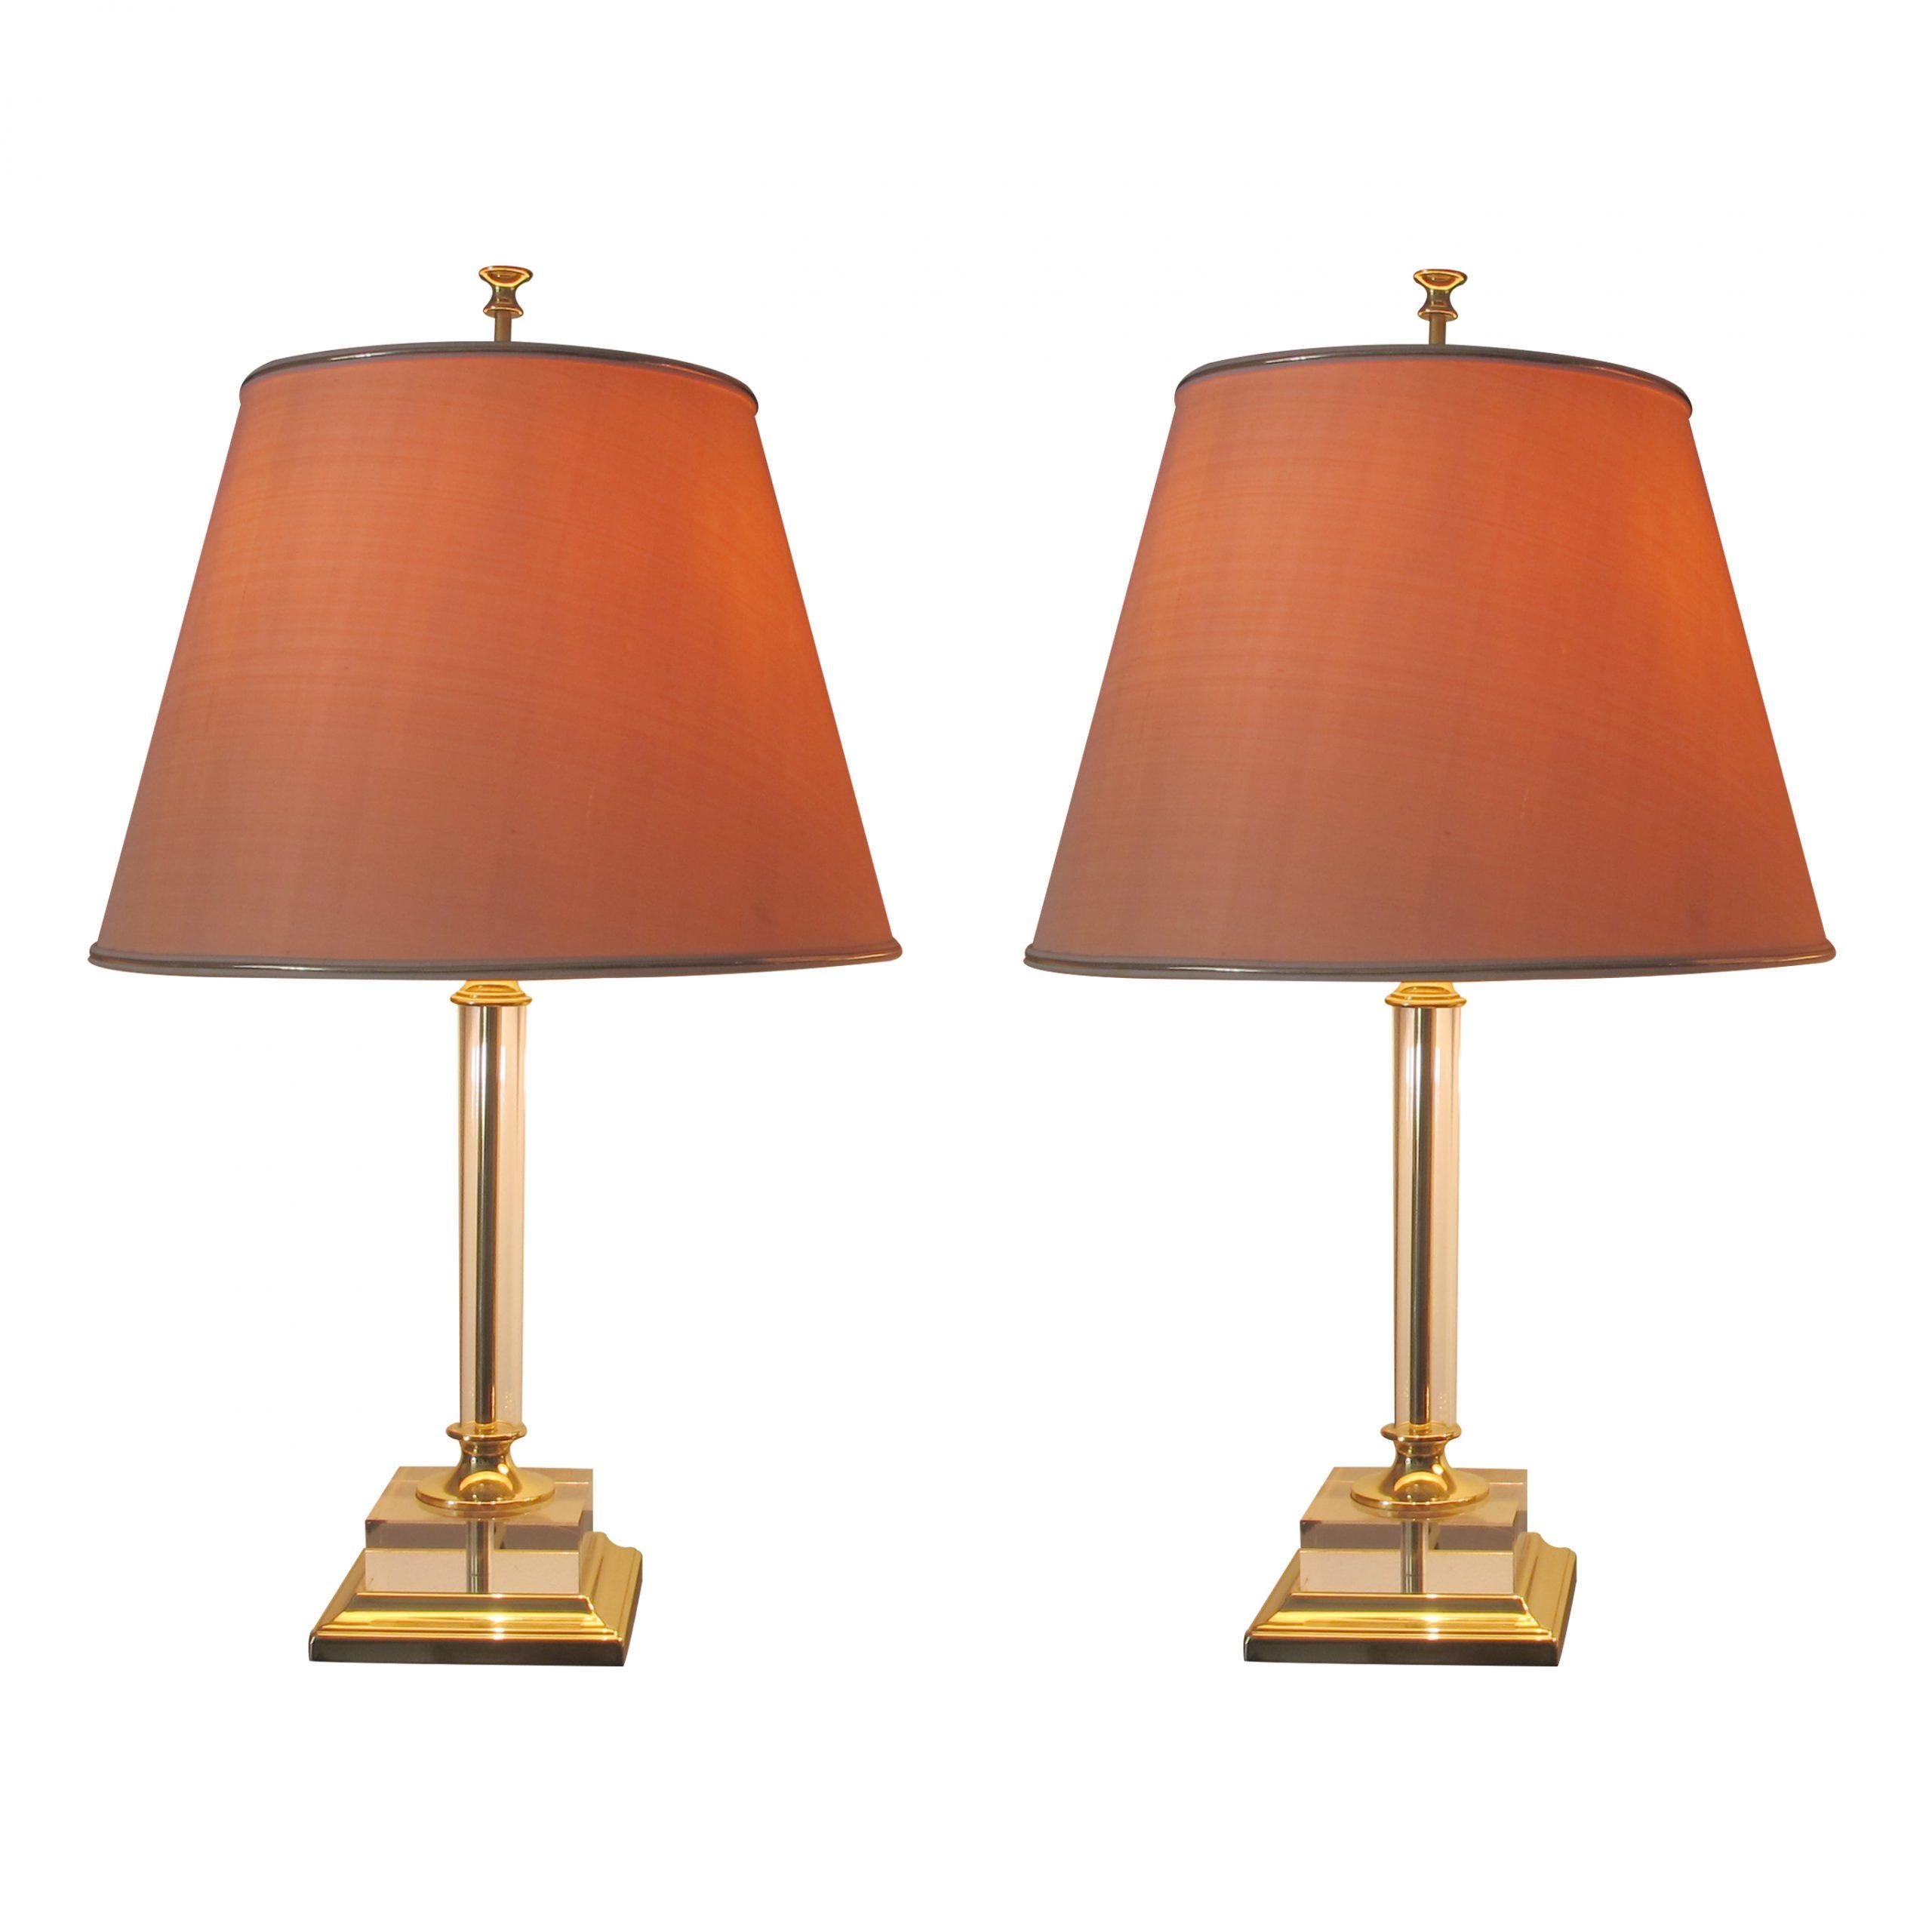 Grande paire italienne de lampes de table en lucite et laiton avec leurs abat-jours d'origine, en très bon état. Il s'agit d'un design élégant et intemporel. Les lampes sont présentées sur une base en laiton avec un épais carré en acrylique et une